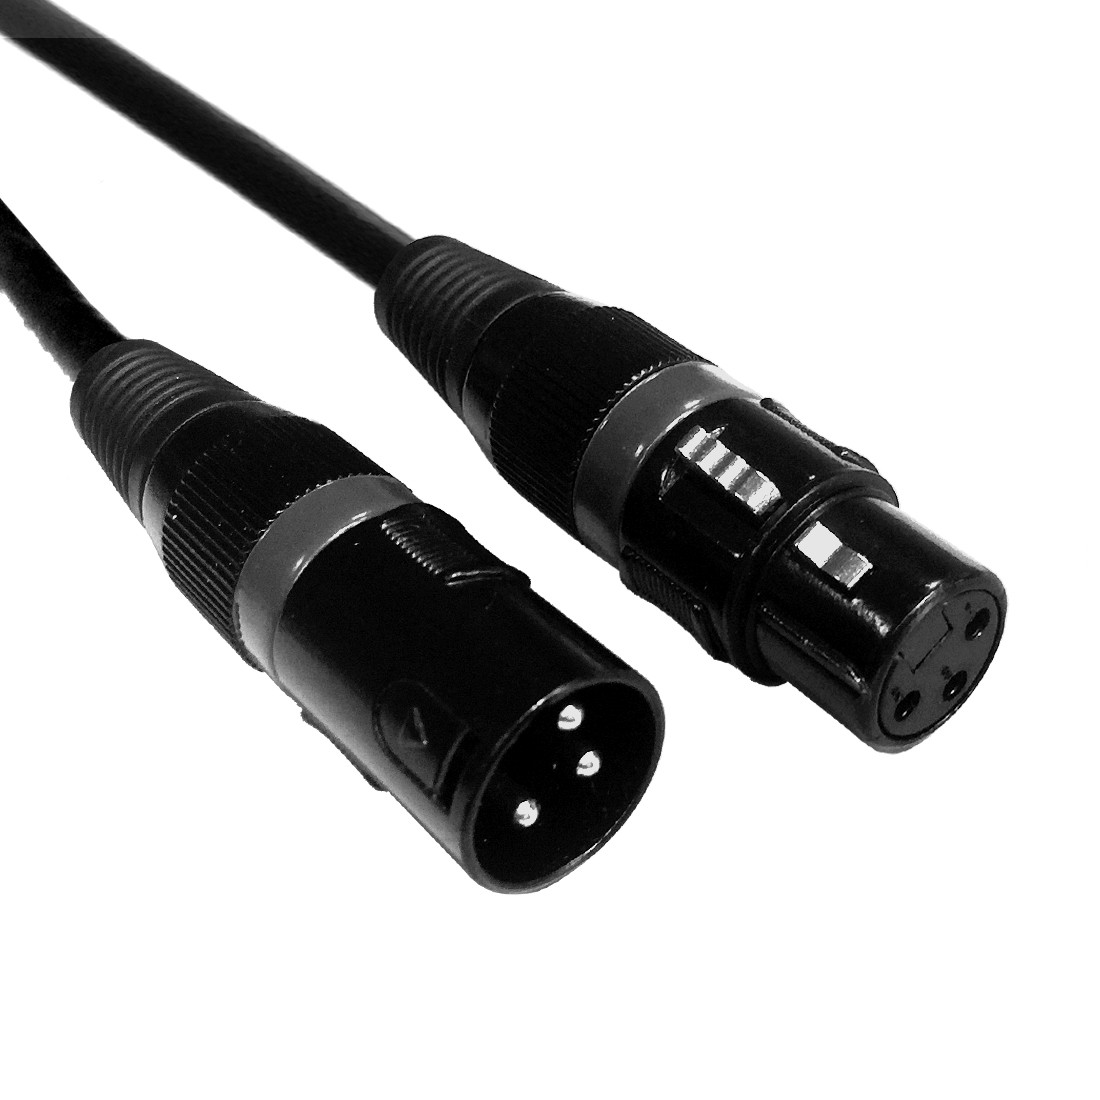 Accu-Cable - DMX Kabel - XLR 3pin male - XLR 3pin female - 15 m